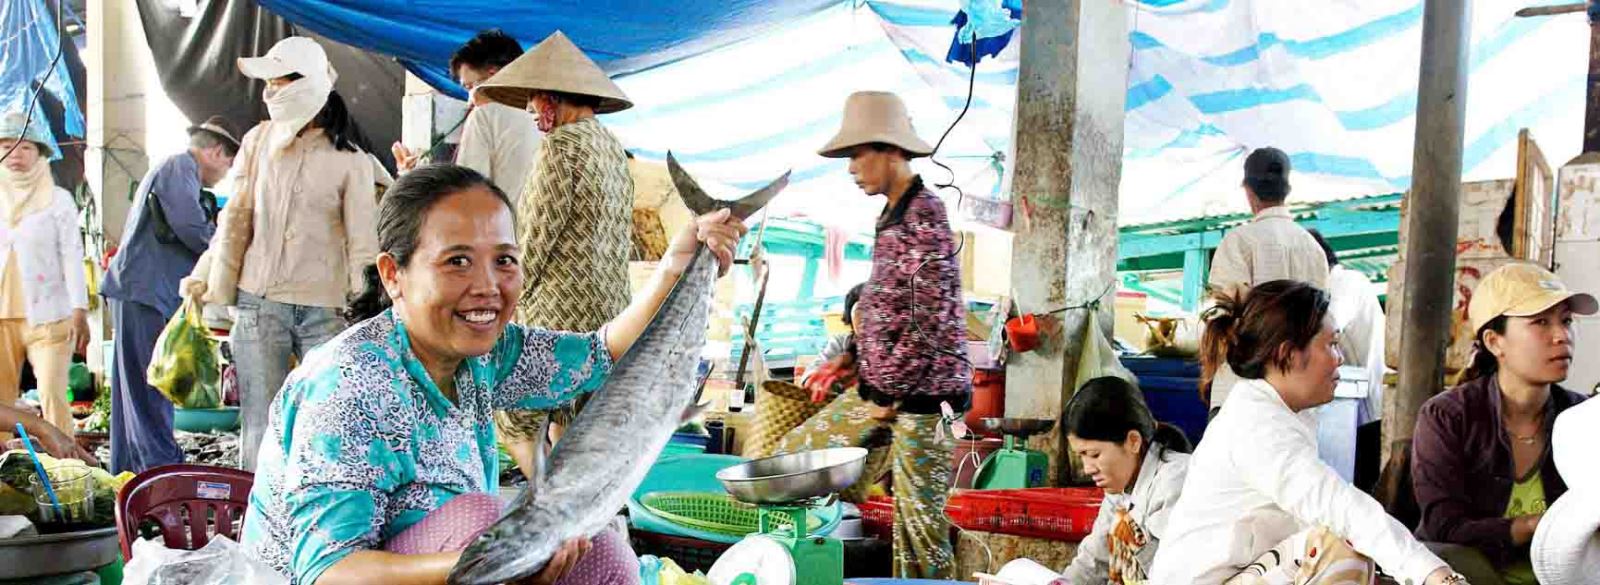 Scopre un mercato locale - Phu Quoc